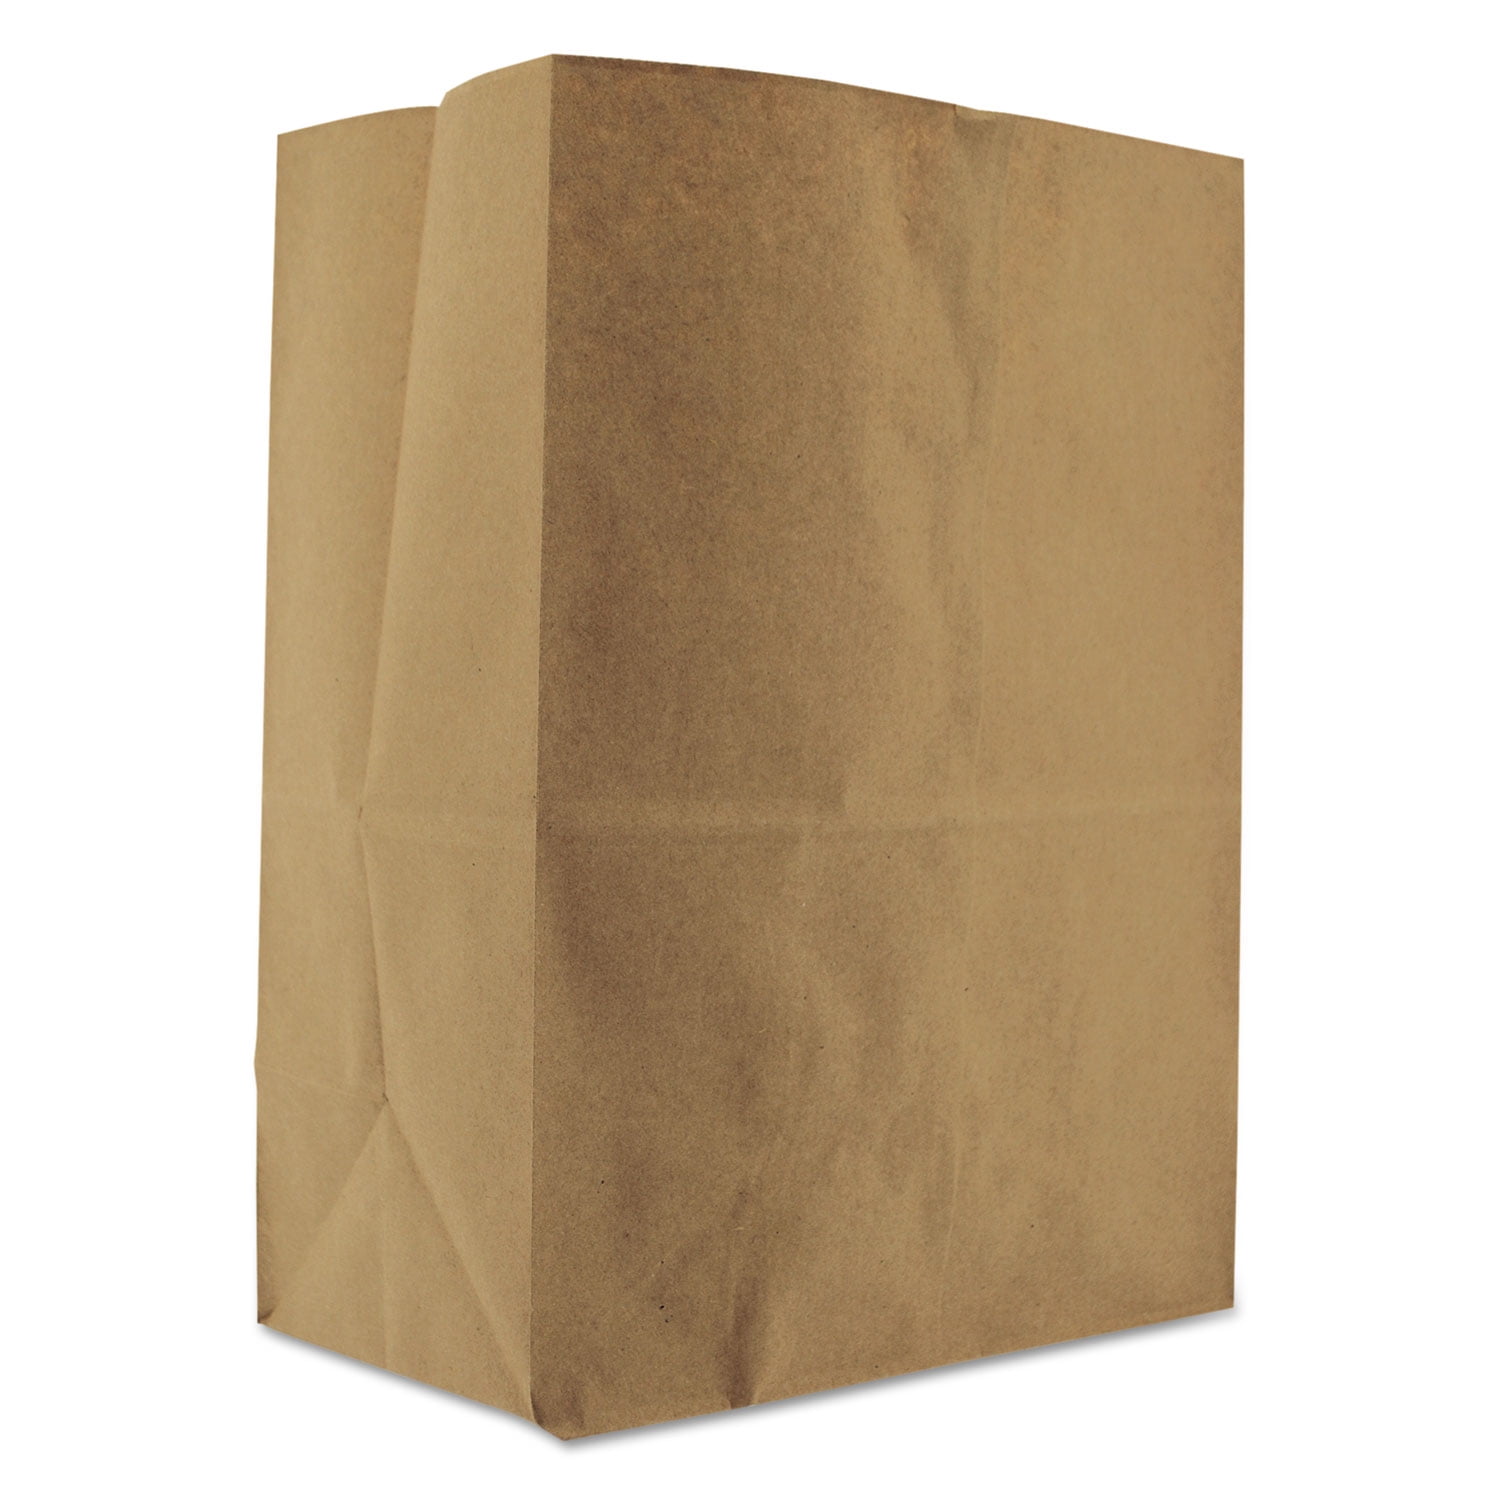 BAG GK20-500 Standard Grade GEN 20# Brown Kraft Paper Bags 500 Bags